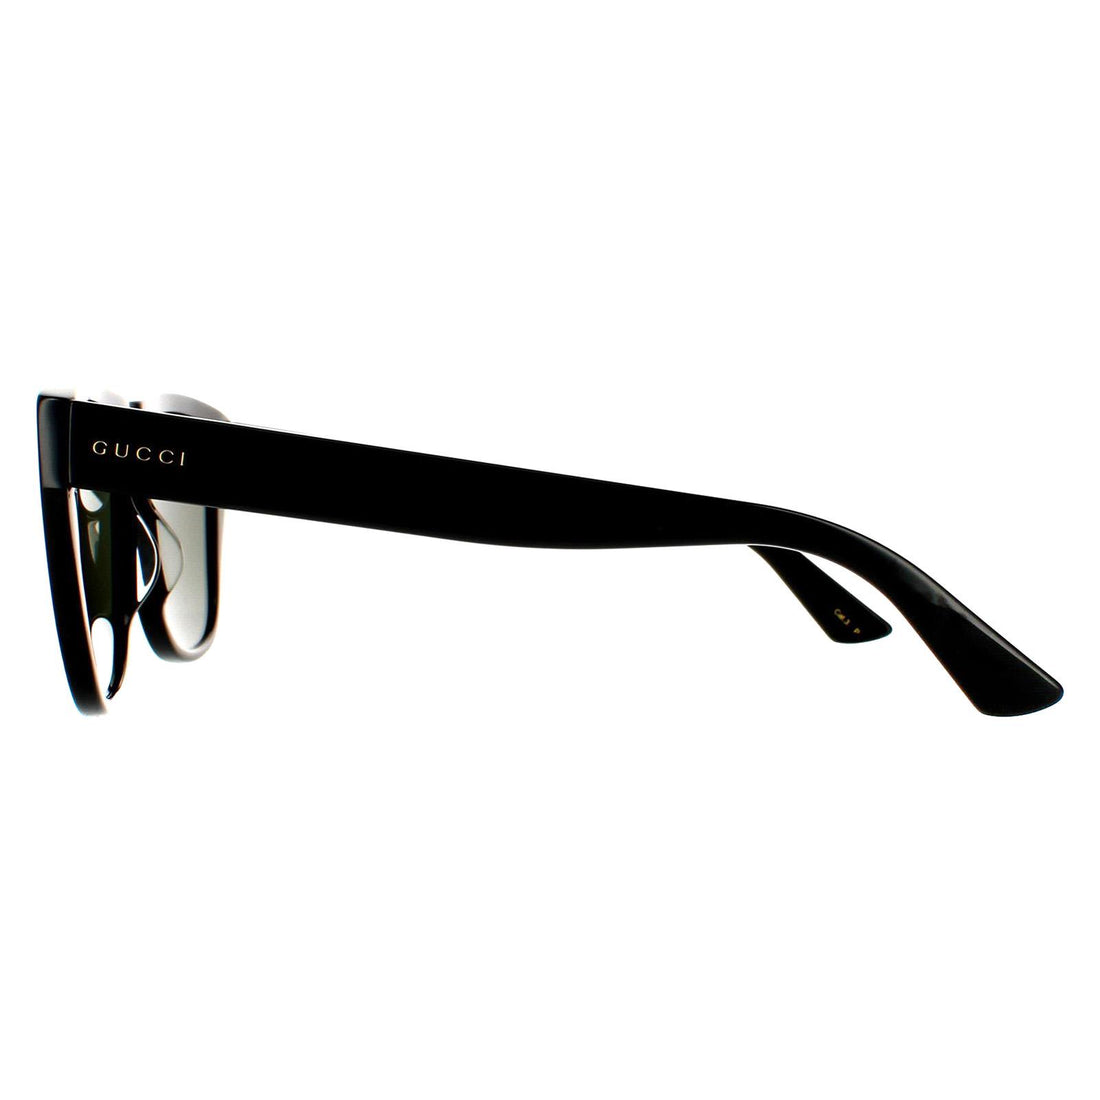 Gucci Sunglasses GG0926S 005 Black Green Polarized